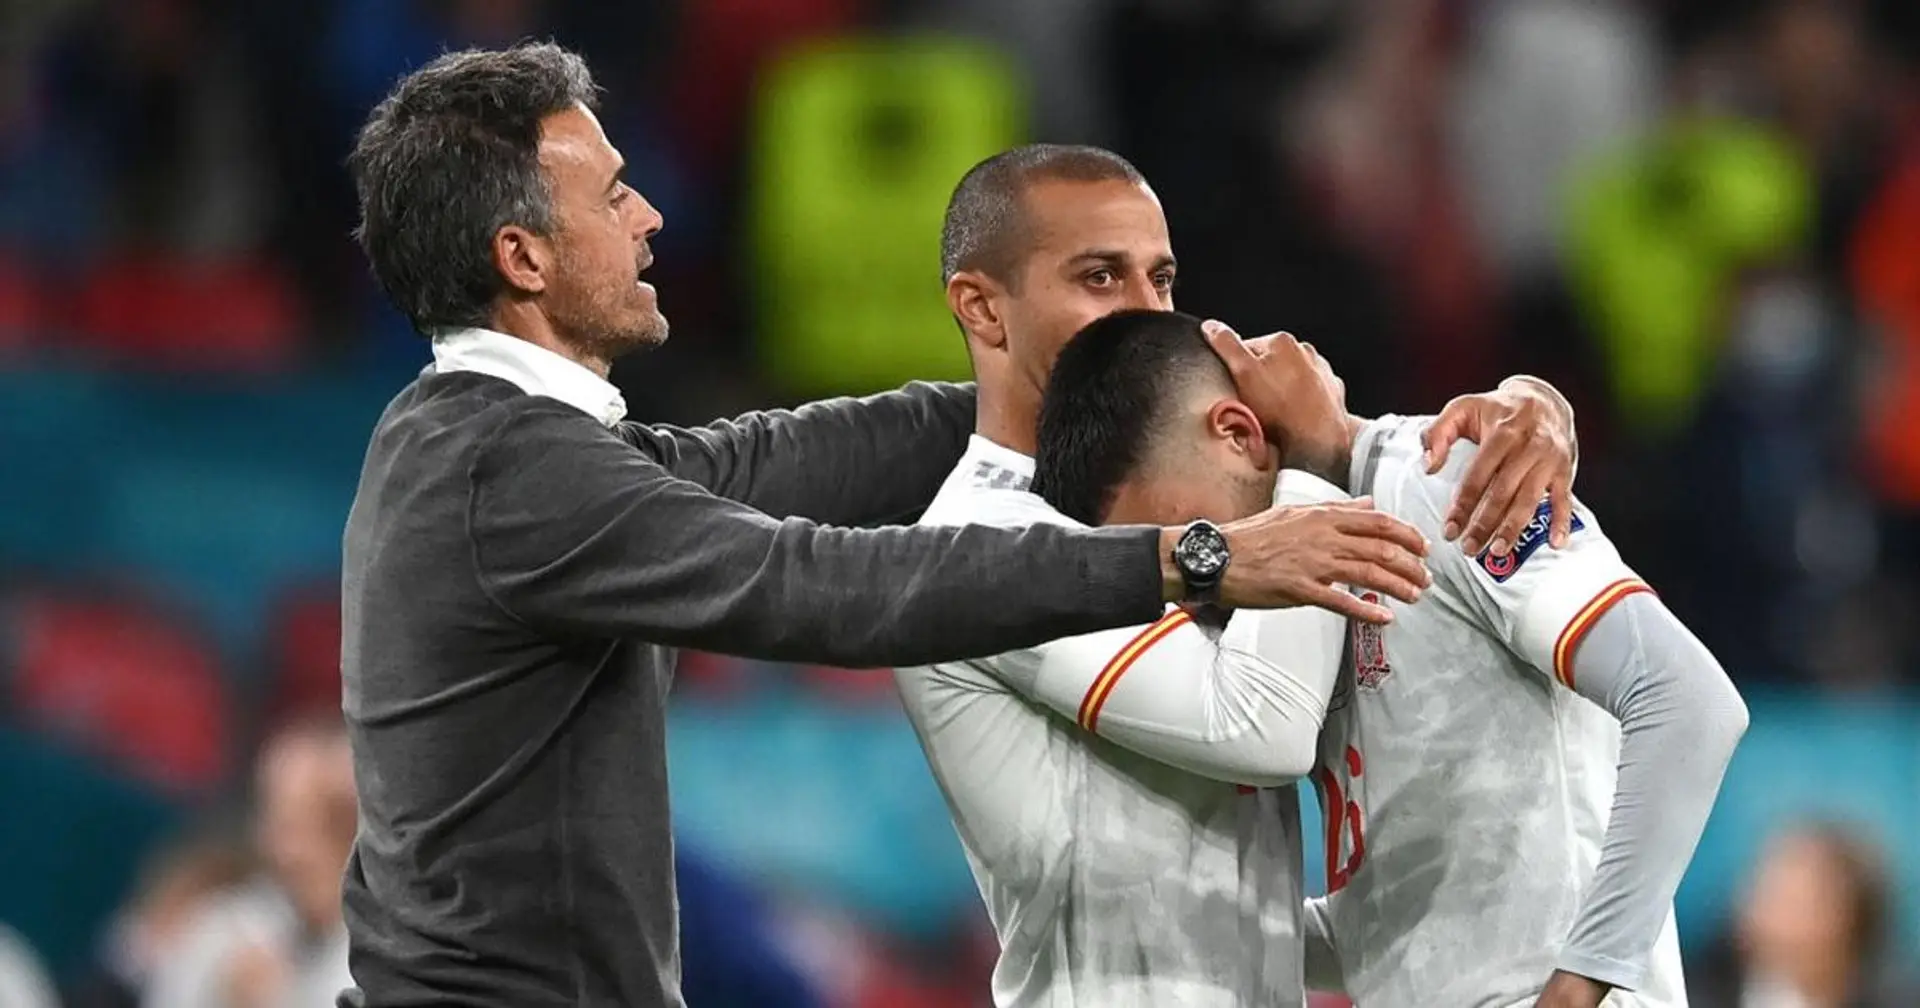 L'Espagne rate la finale de l'Euro après avoir perdu contre l'Italie aux tirs au but